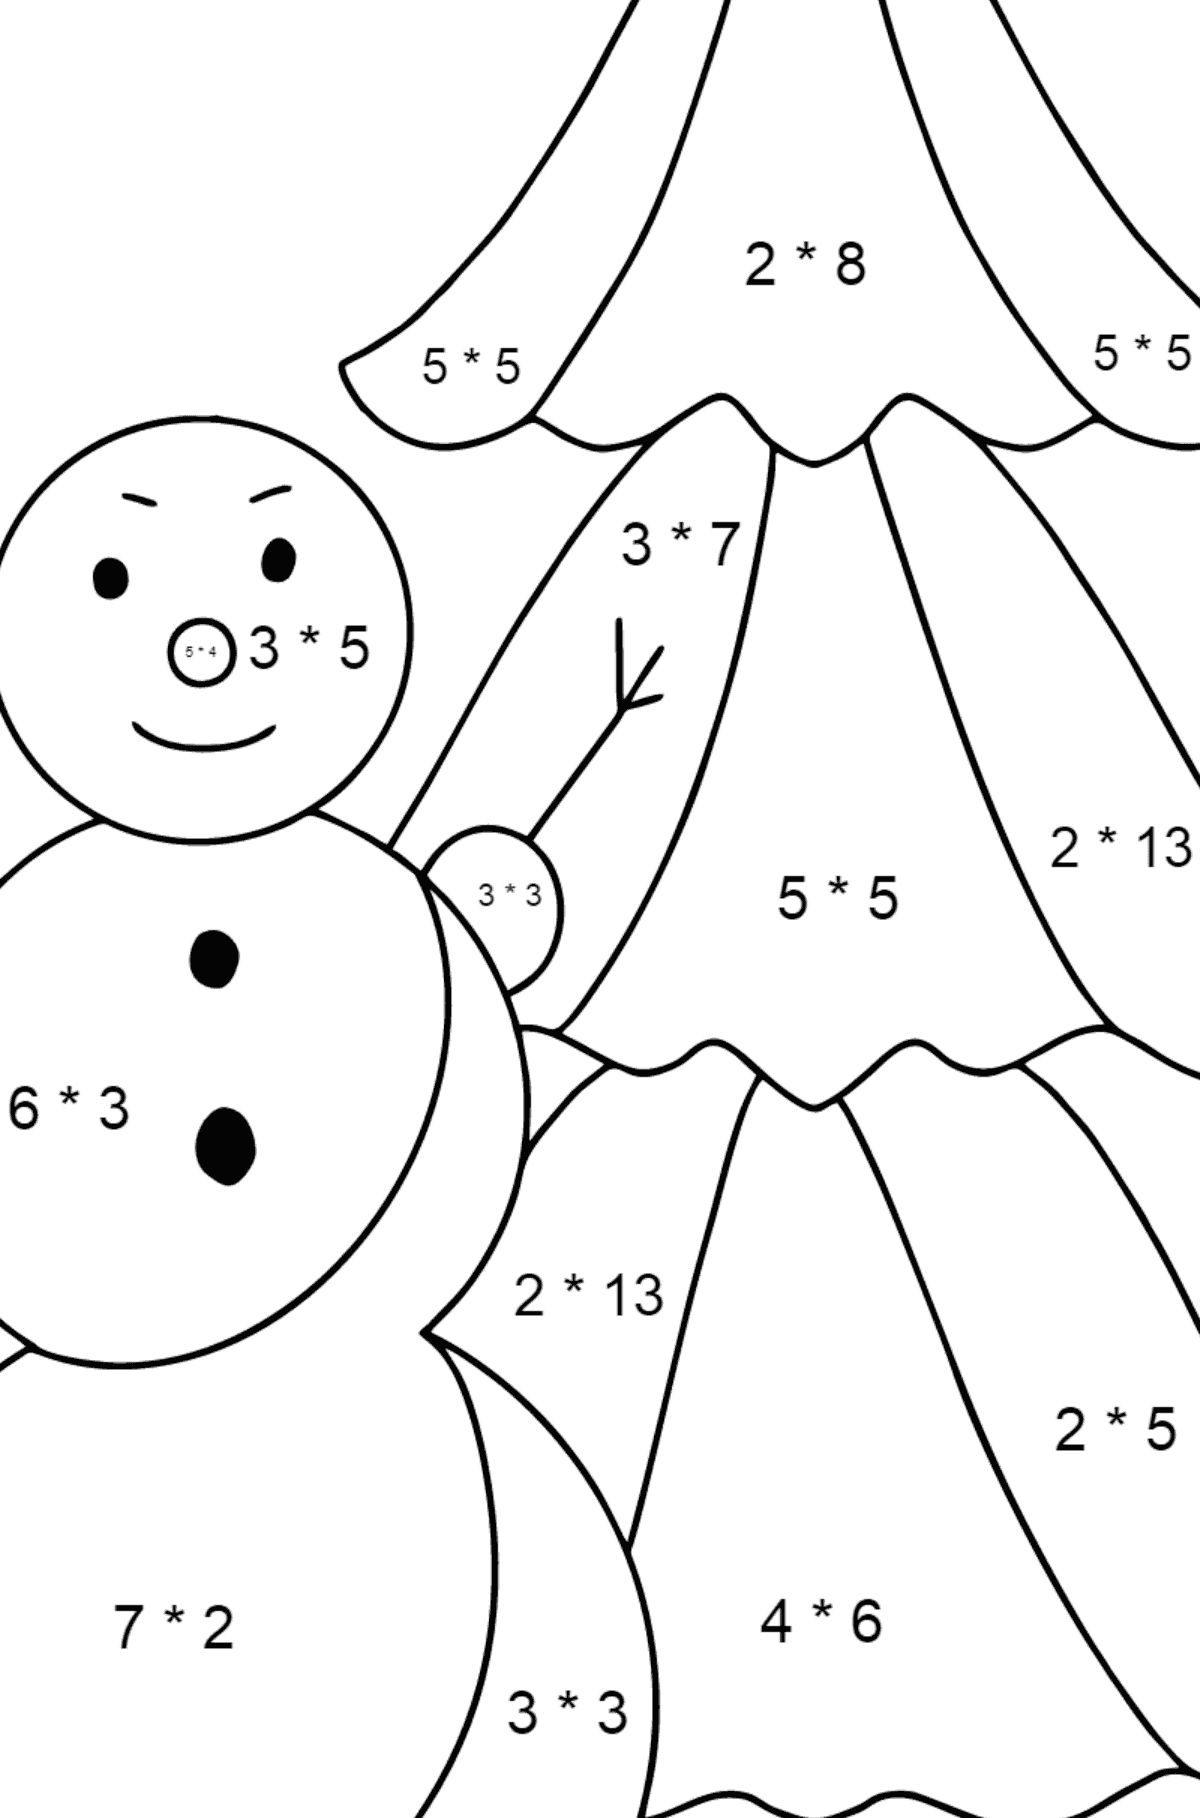 Desenho para colorir do boneco de neve para crianças - Colorindo com Matemática - Multiplicação para Crianças